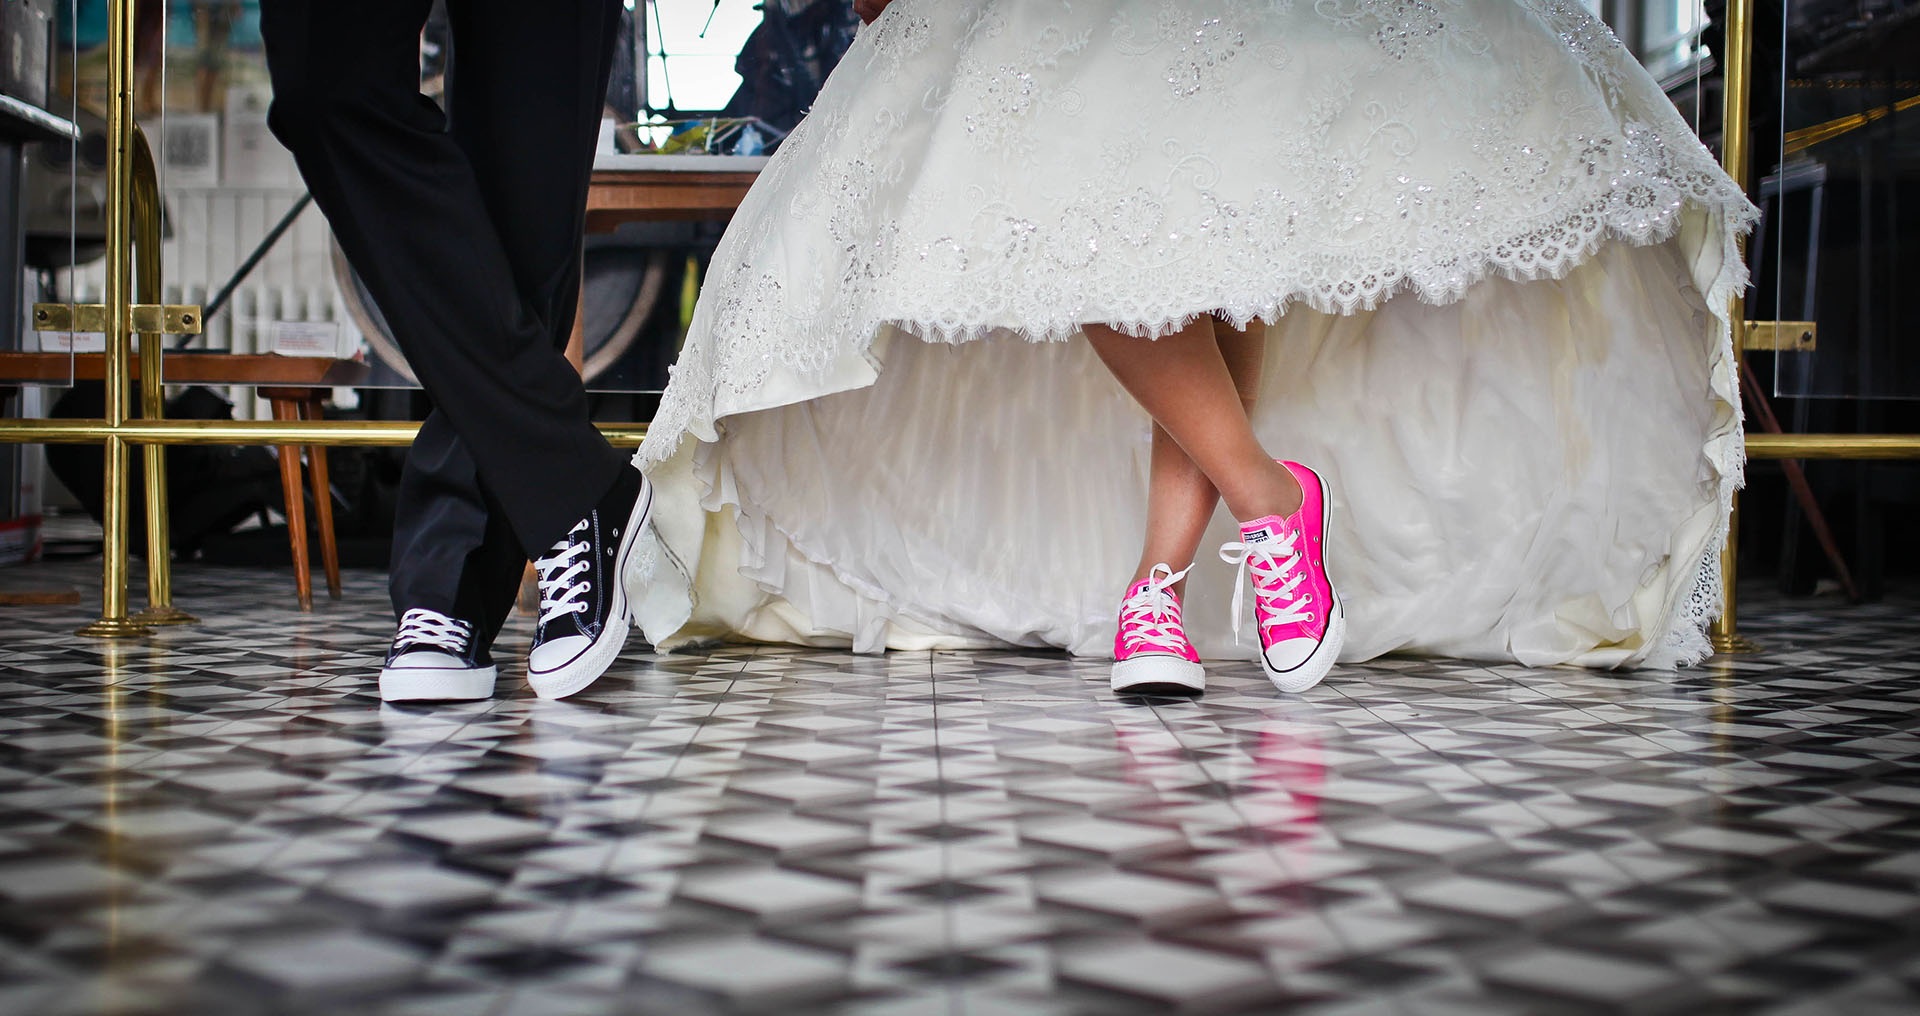 Камерная свадьба дает возможность отказаться от традиционных строгих смокингов и напыщенных вечерних платьев в пользу более свободного фантазийного стиля.